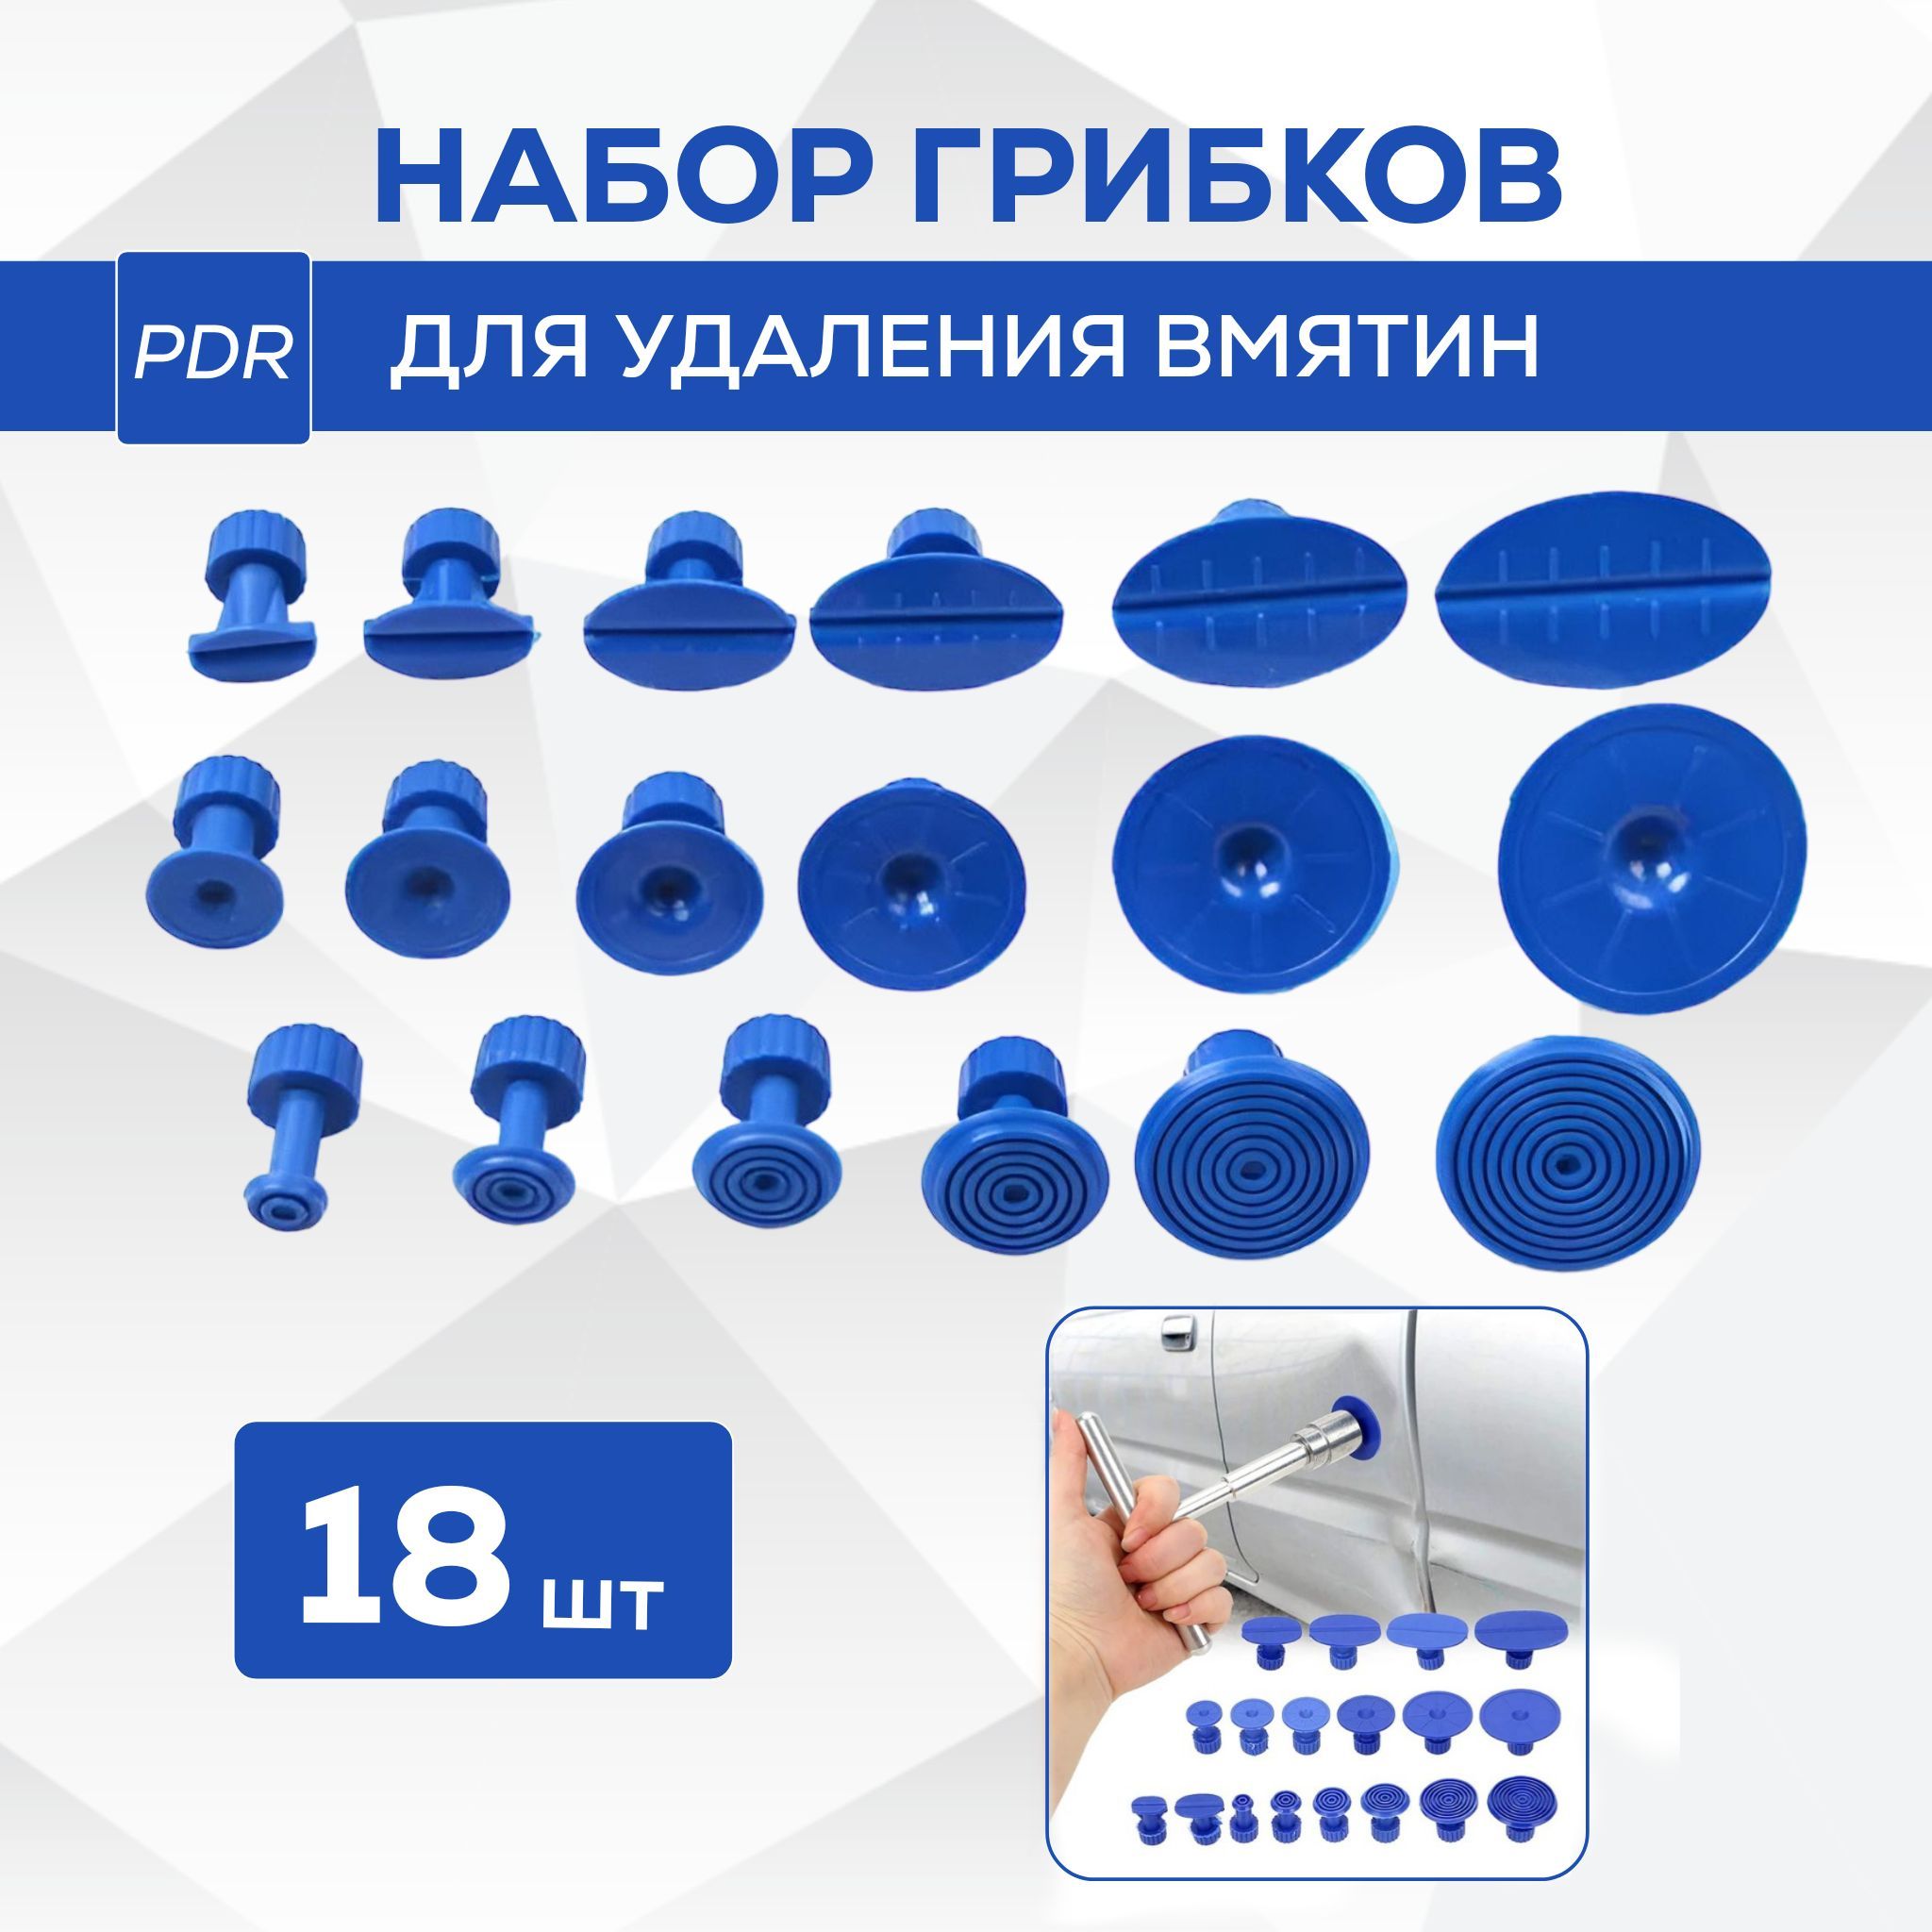 OLX.ua - объявления в Украине - грибки pdr